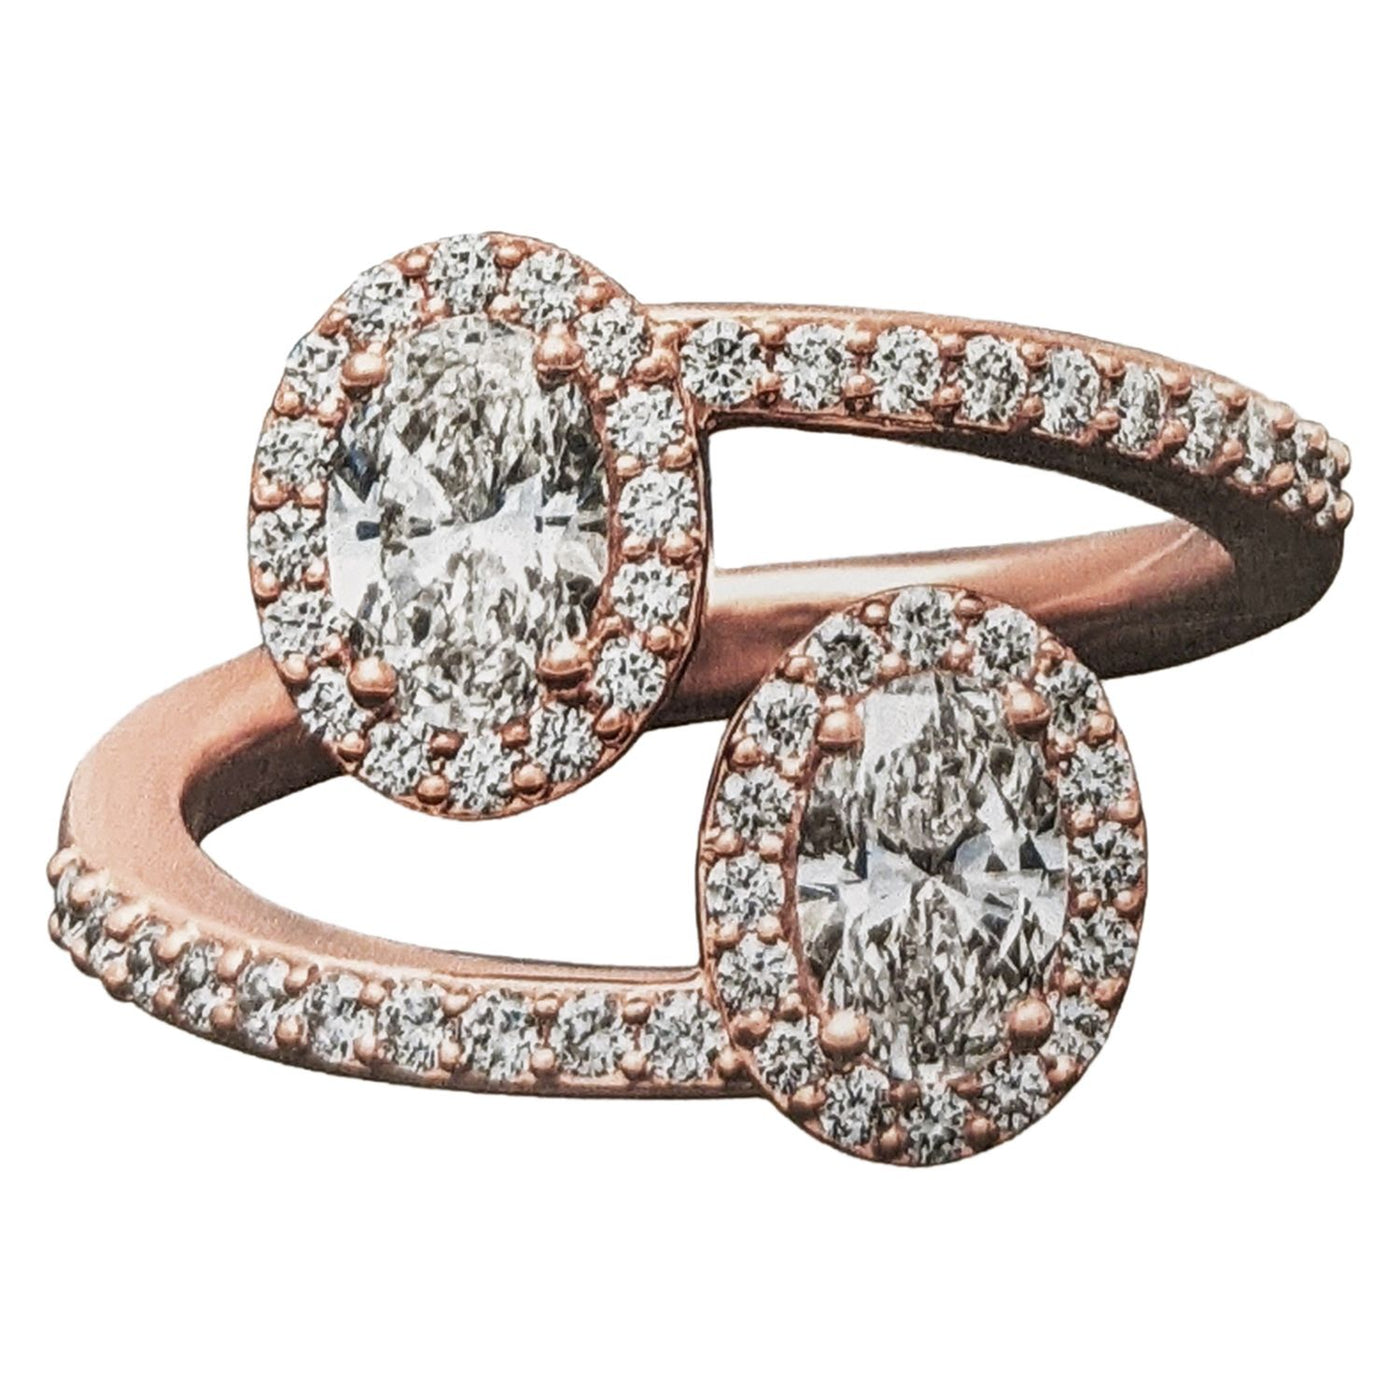 Alayah Diamond Ring